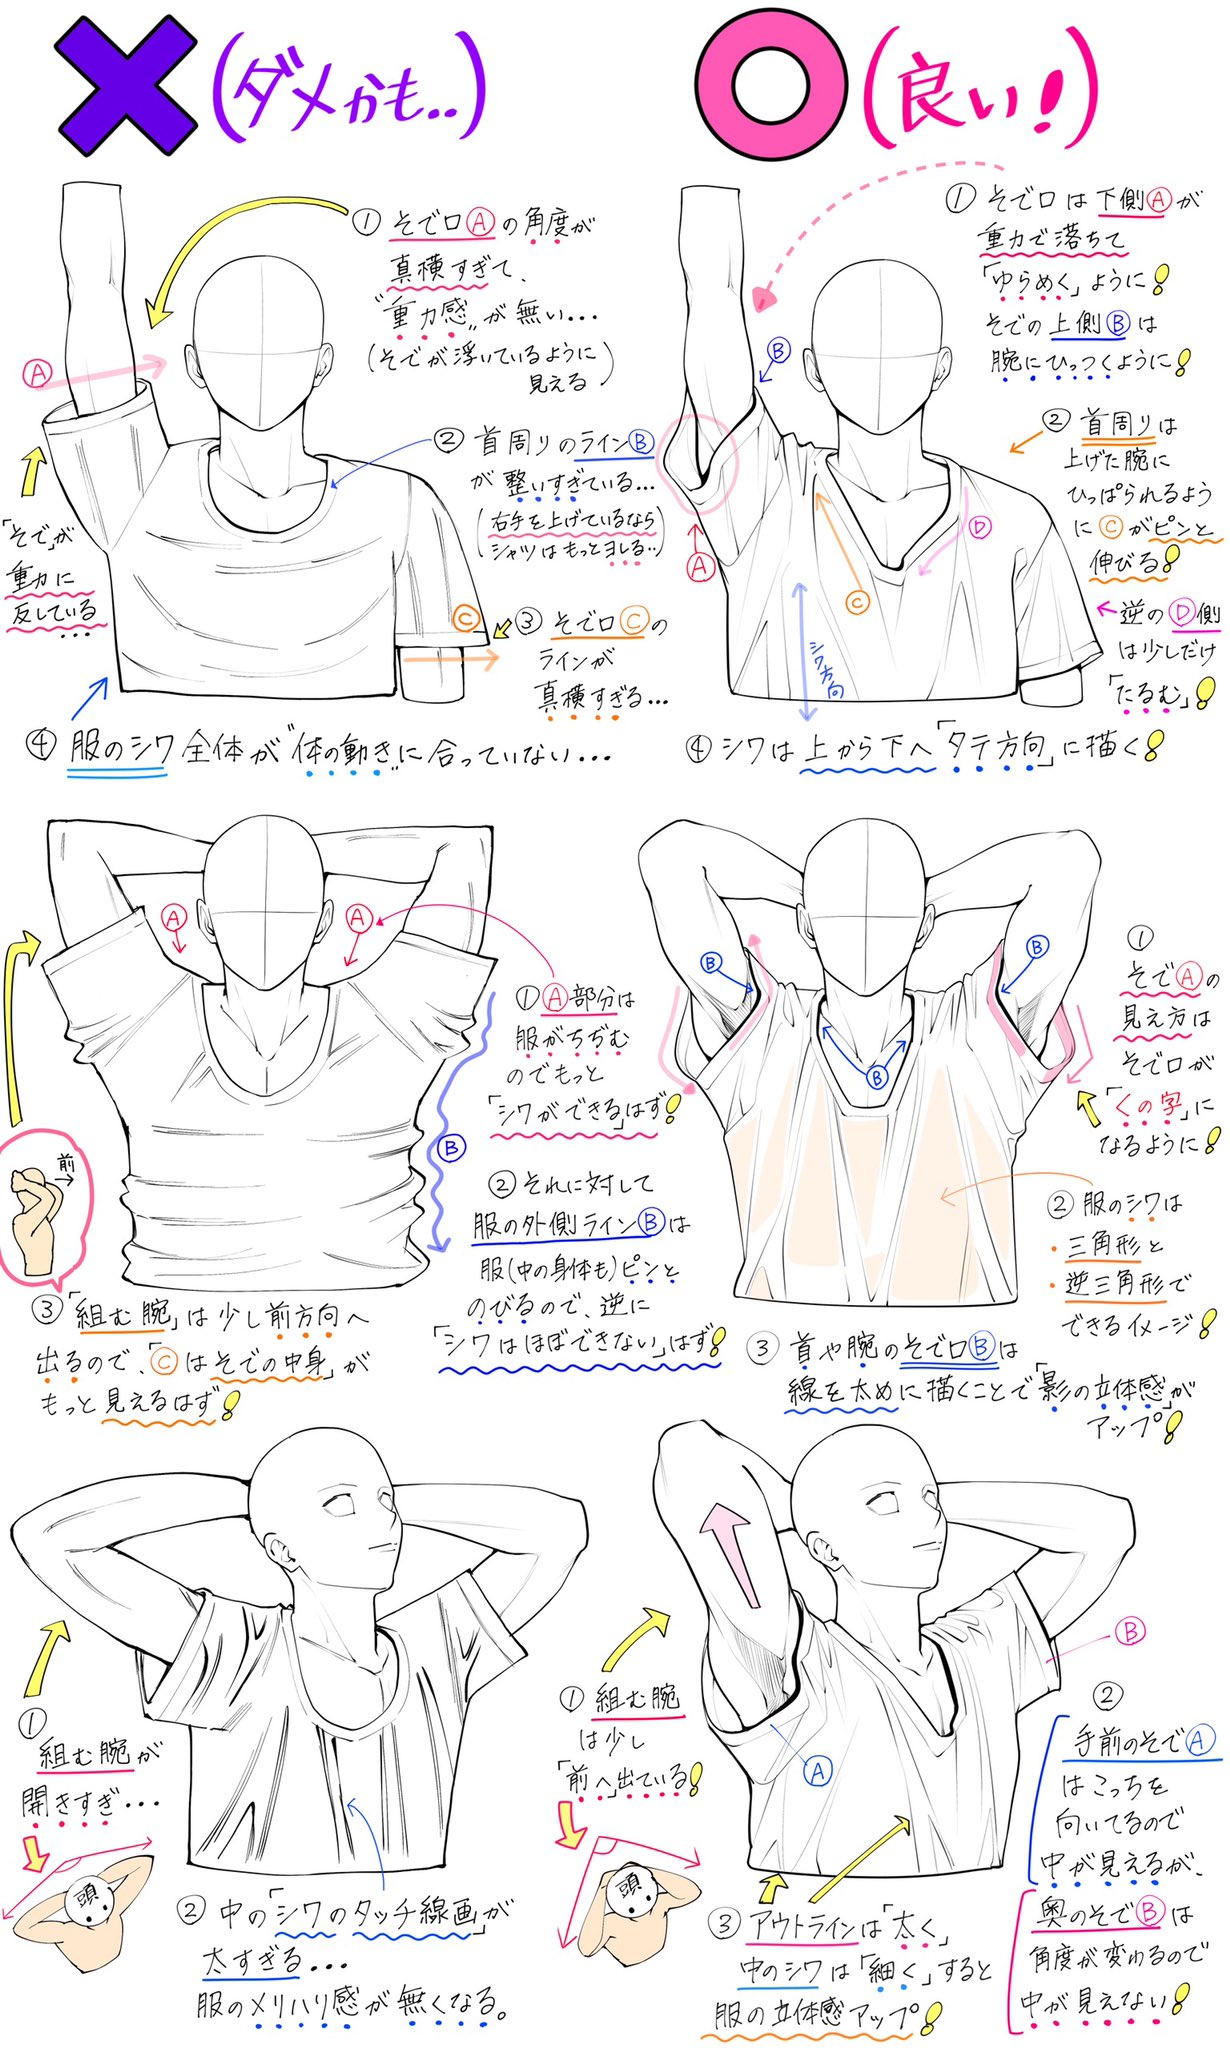 吉村拓也 イラスト講座 腕を上げるポーズ の描き方 腕の角度と筋肉の位置 が上達する ダメかも と 良いかも T Co Txrj5073ka Twitter